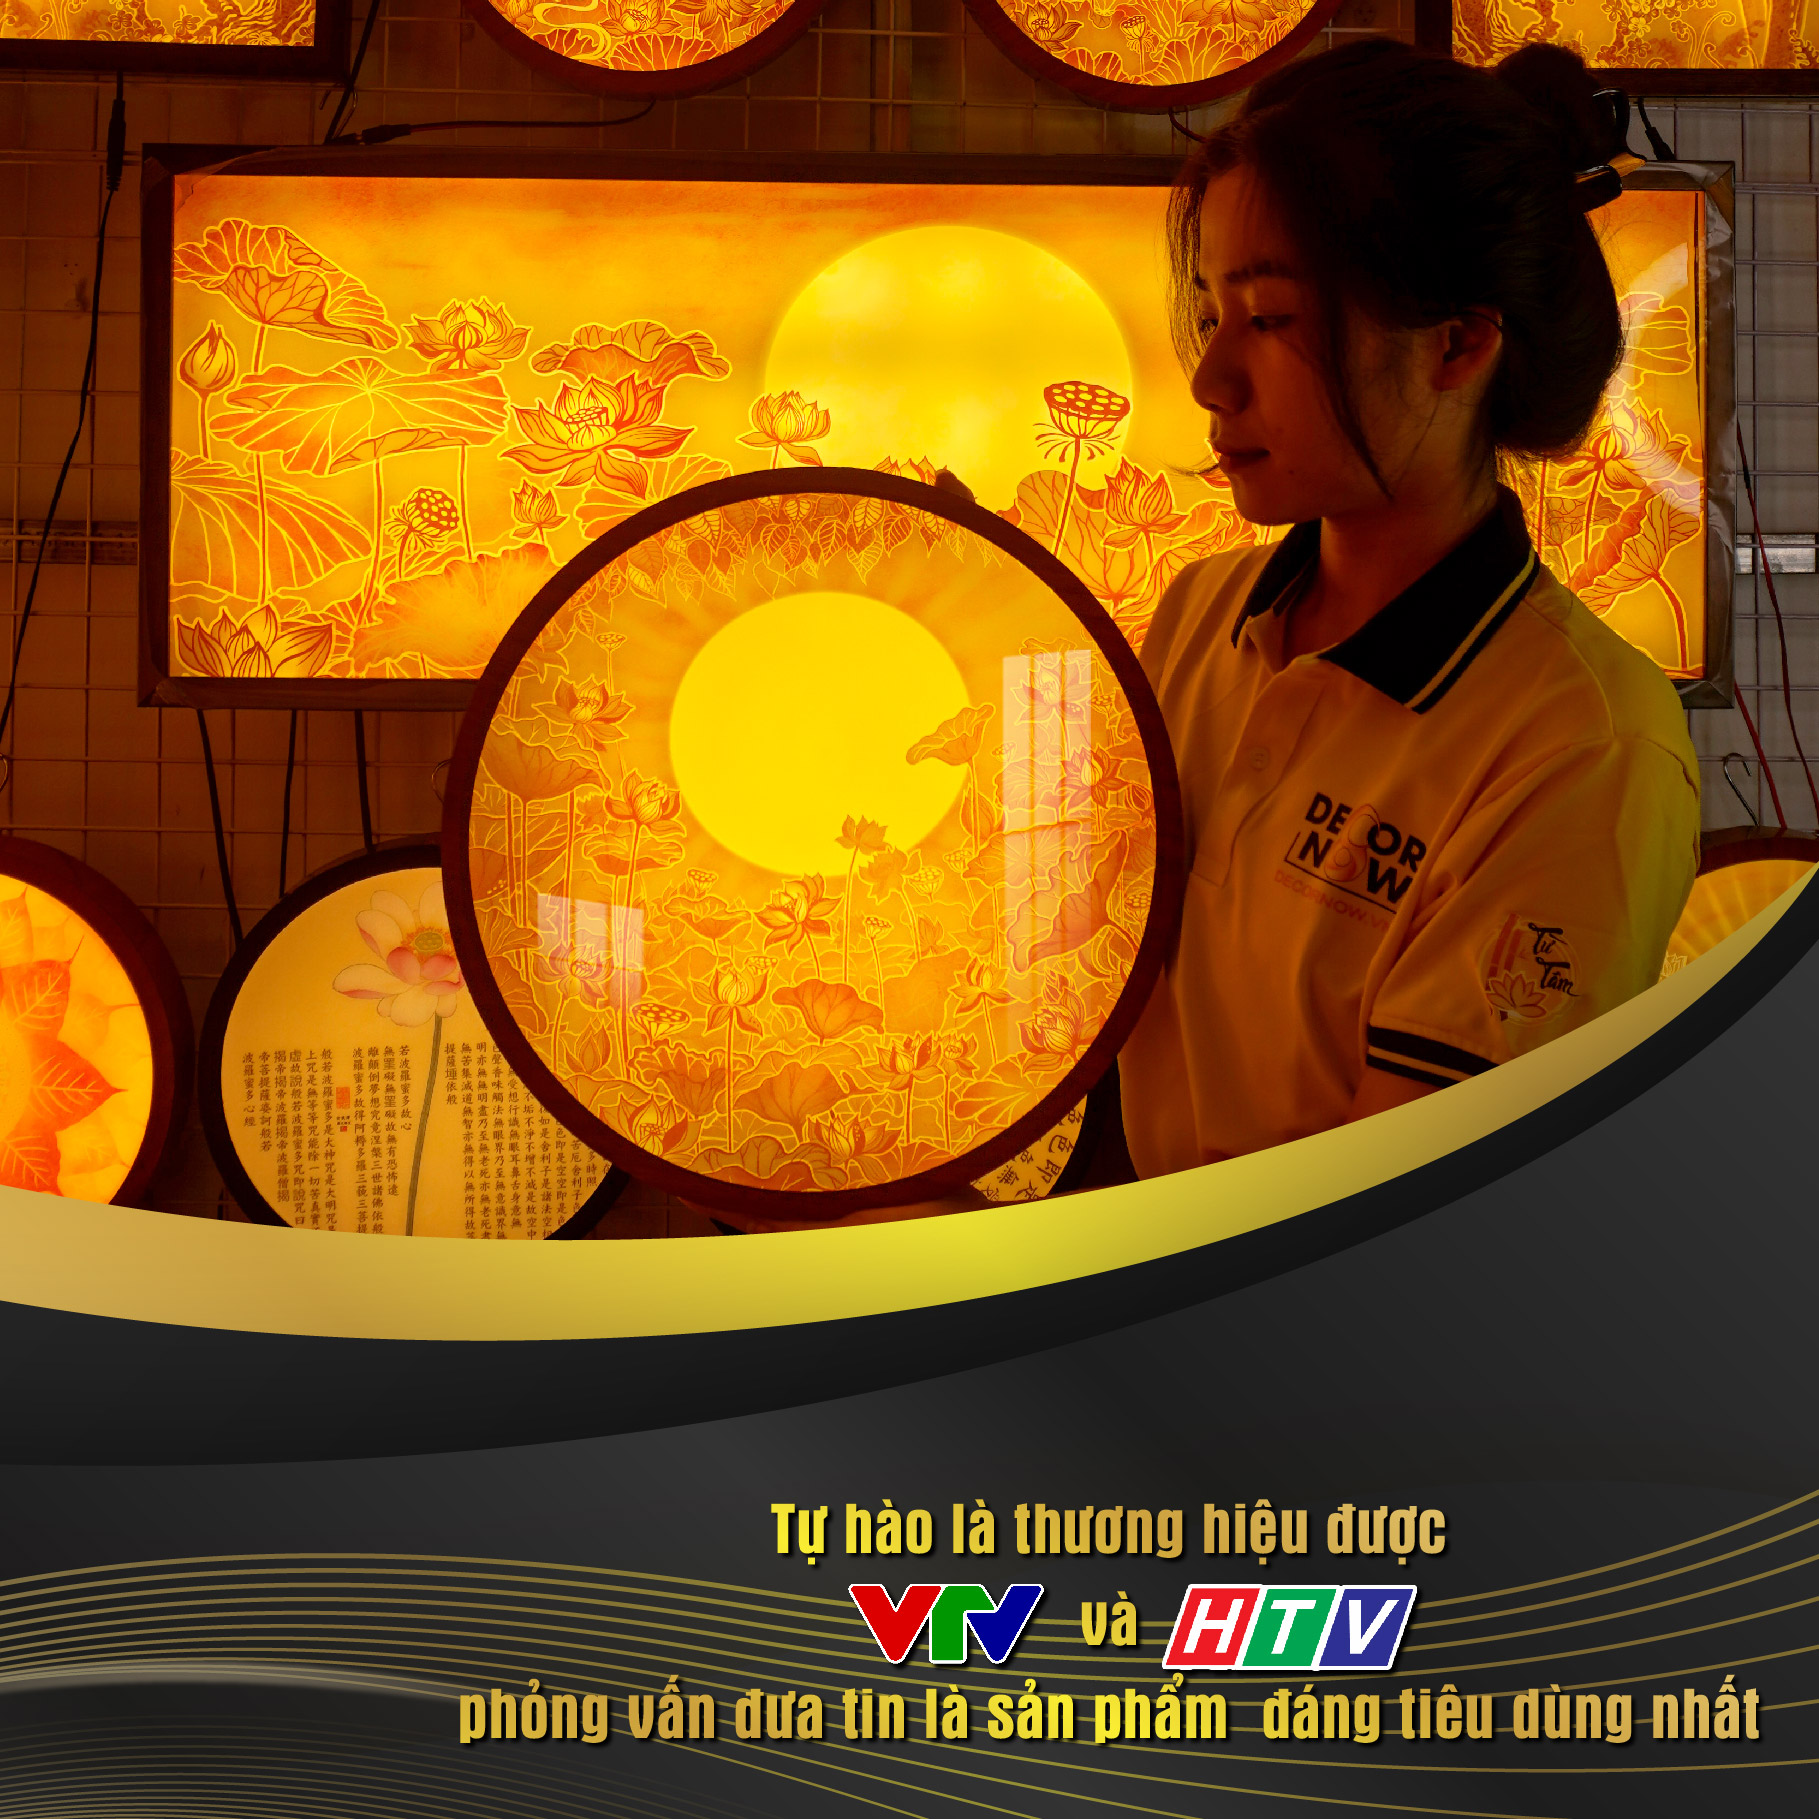 Đèn Hào Quang Phật In Tranh Trúc Chỉ DECORNOW 30,40 cm, Trang Trí Ban Thờ, Hào Quang Trúc Chỉ MANDALA DCN-TC5